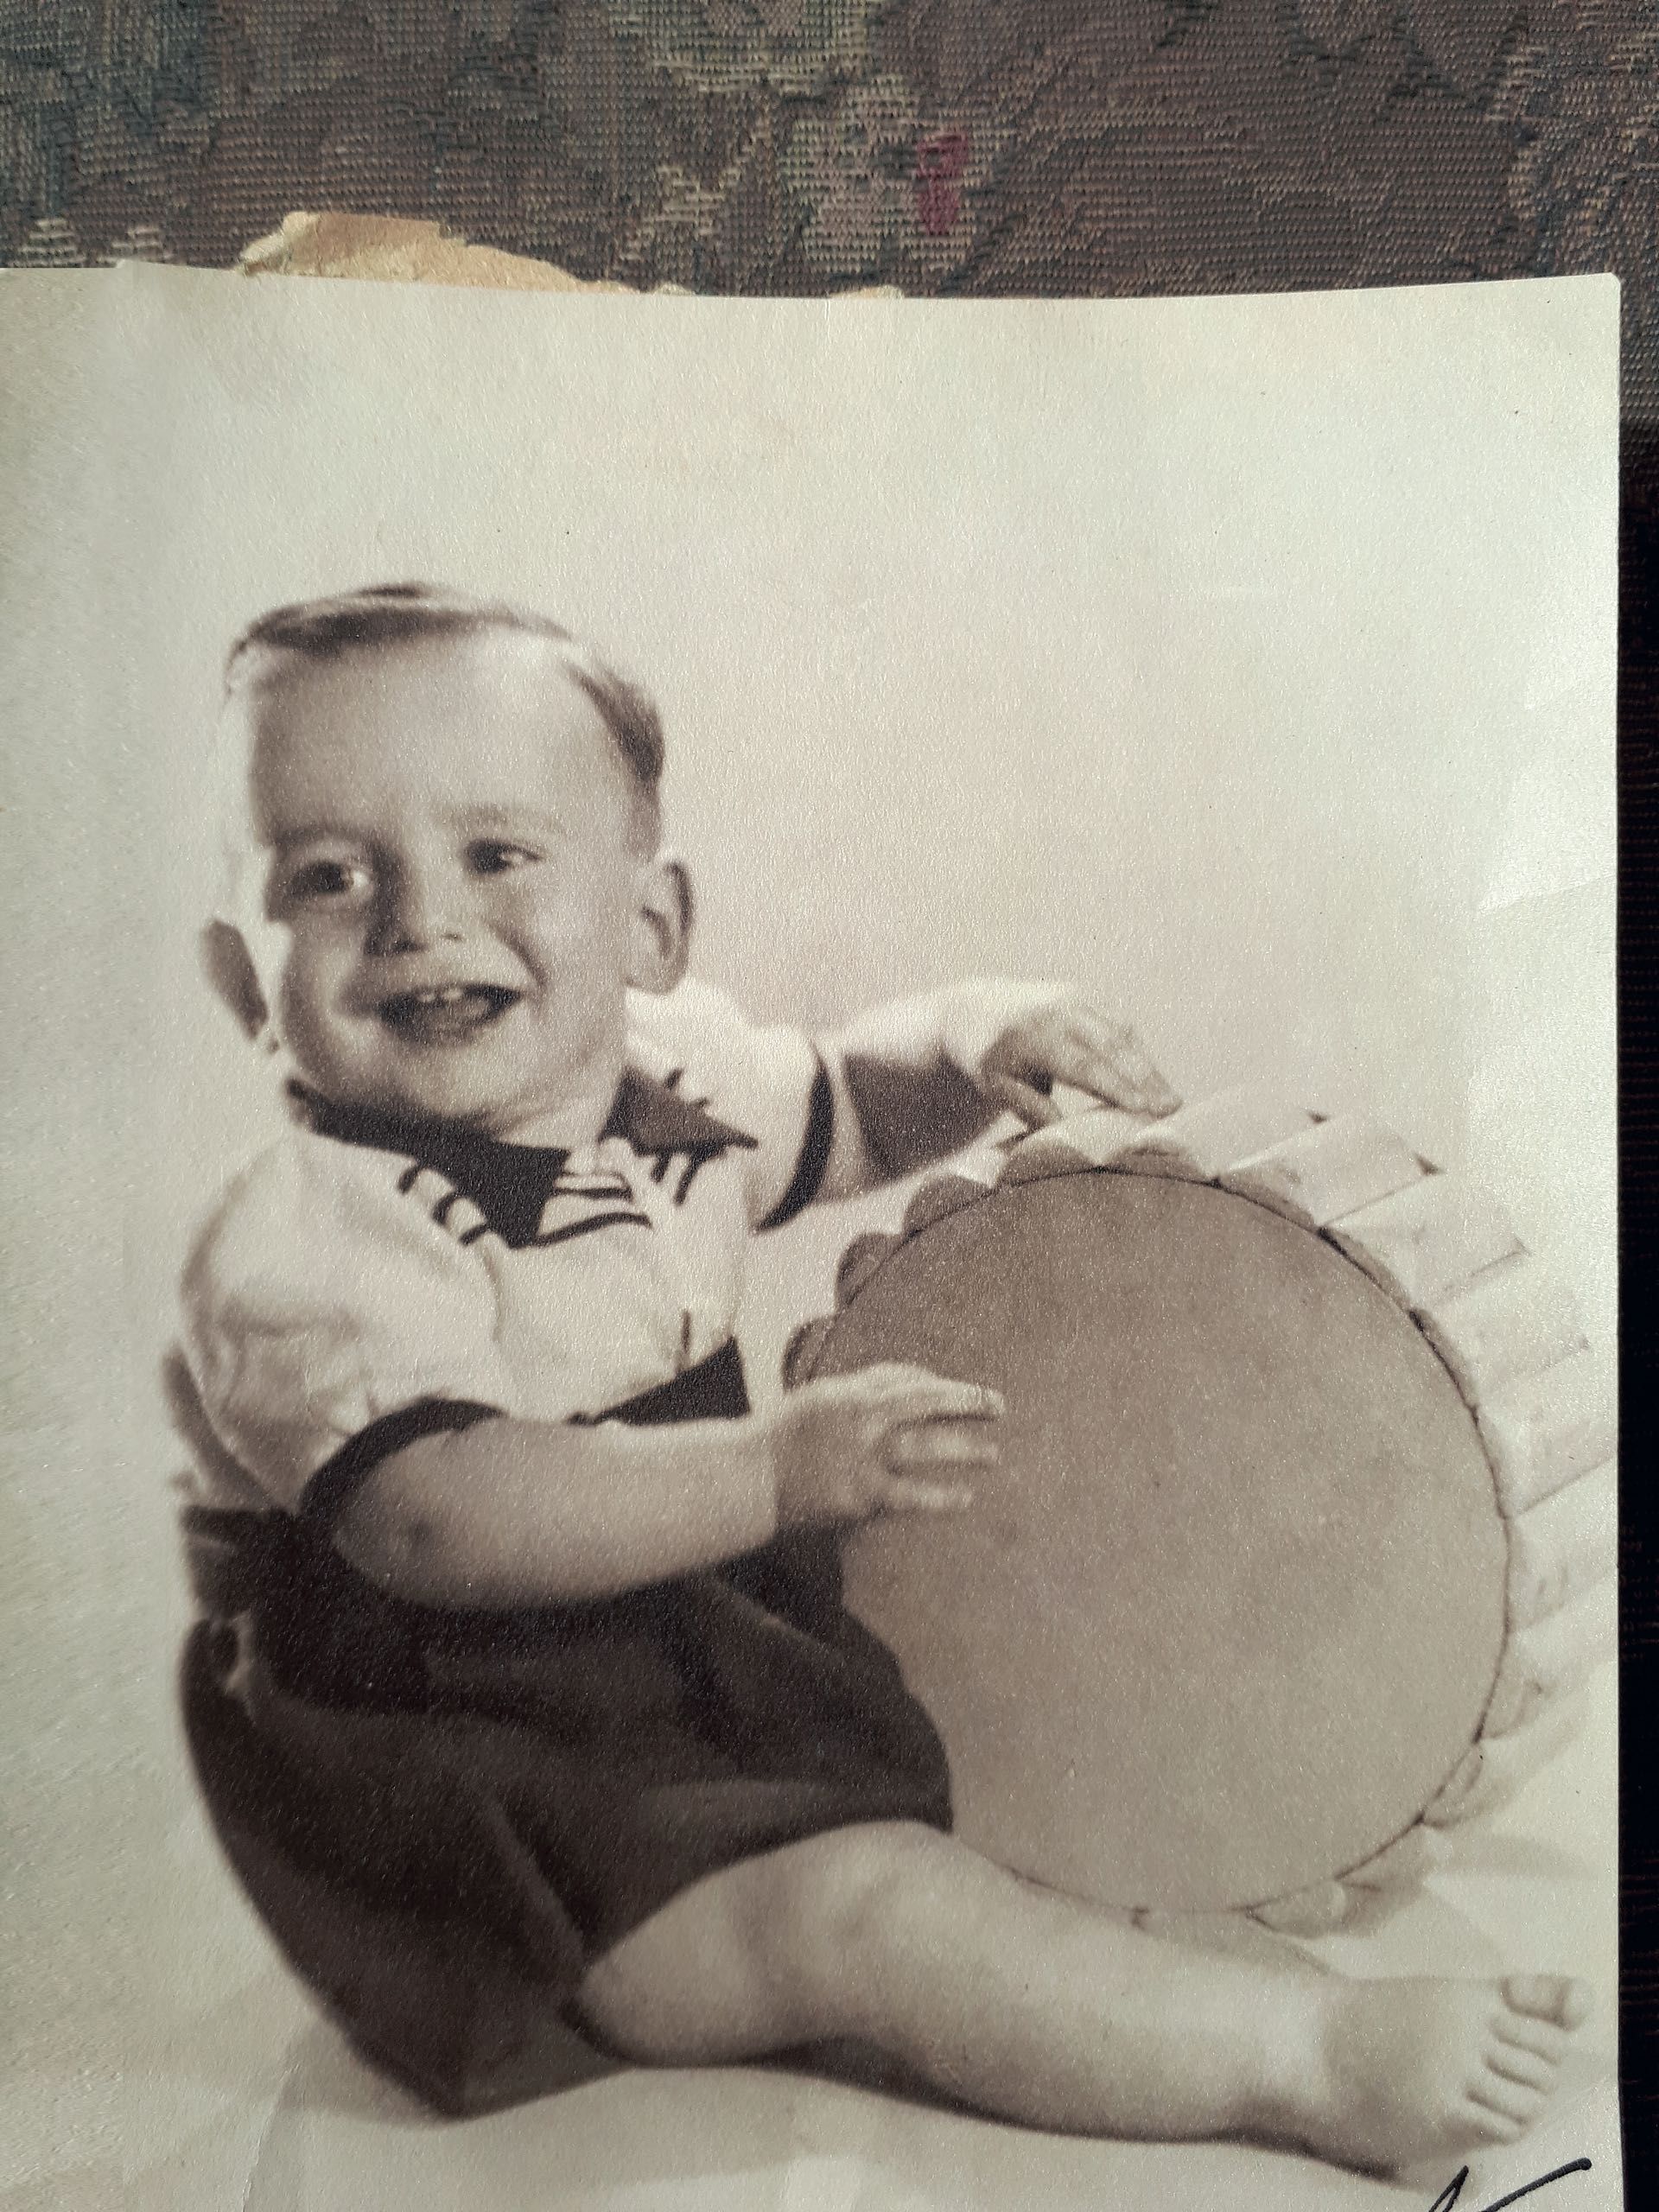 Jorge en su niñez, con la ancha sonrisa que lo caracterizó siempre. (Foto Archivo Gente)